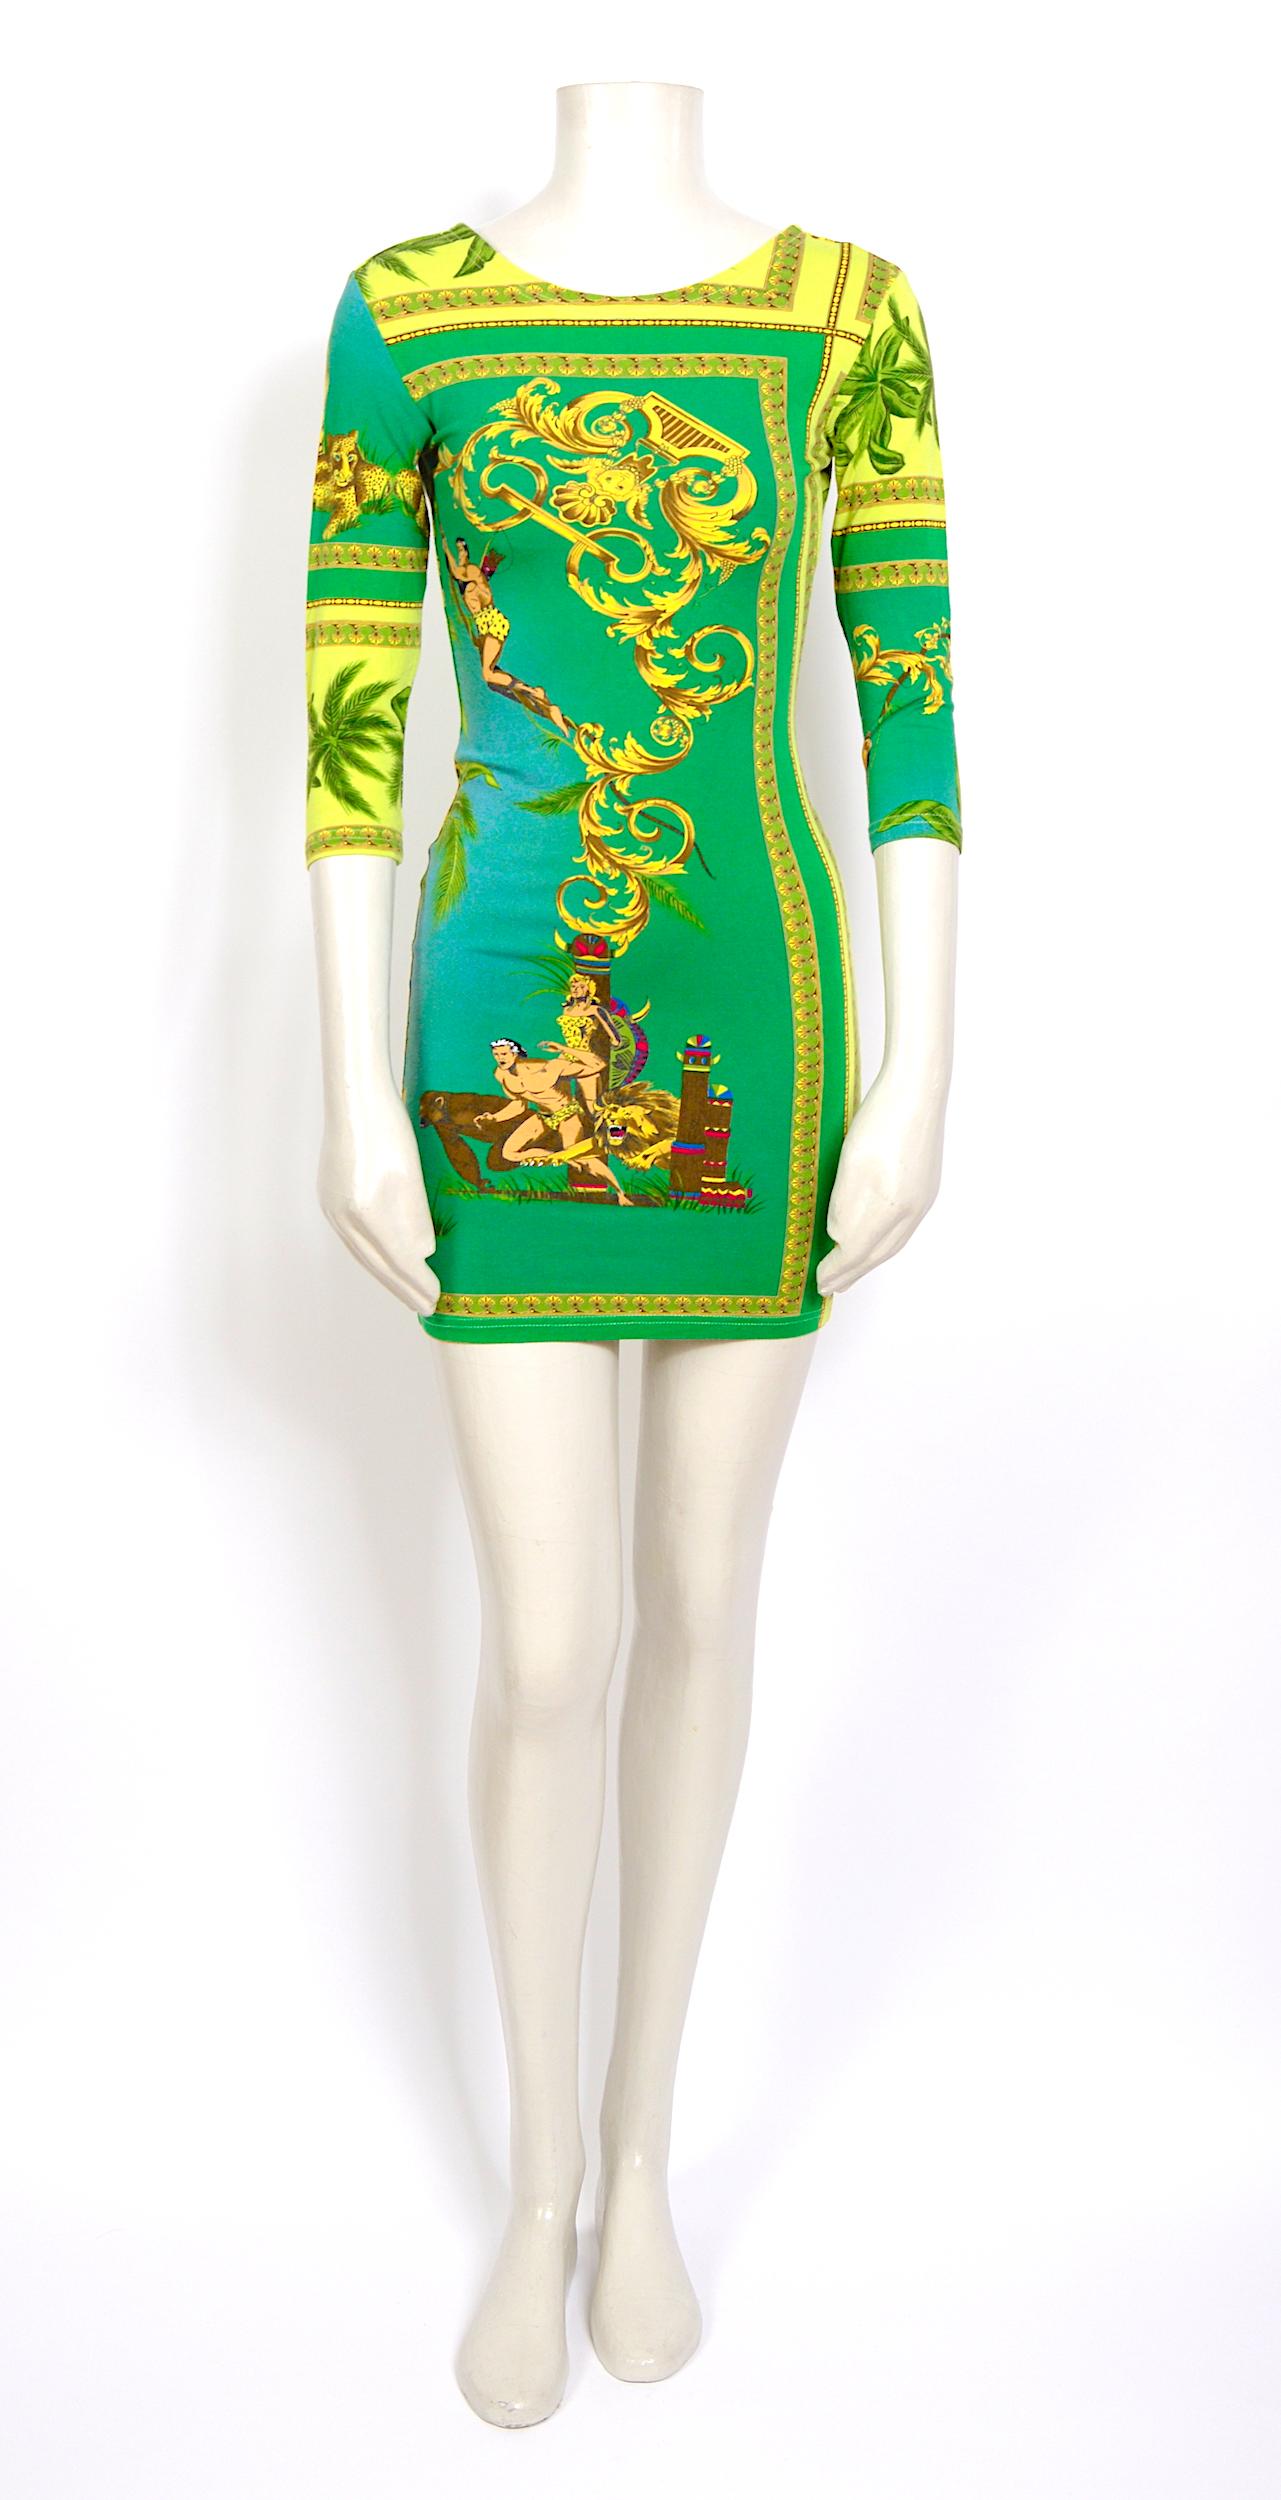 Gianni Versace, il était, il est et il sera toujours l'un des meilleurs designers de tous les temps.
Rare et désirable robe vintage des années 1990 Versace Jeans Couture stretch Tarzan & Jane imprimé jungle (vert-jaune-bleu-or)
Fabriqué en Italie -